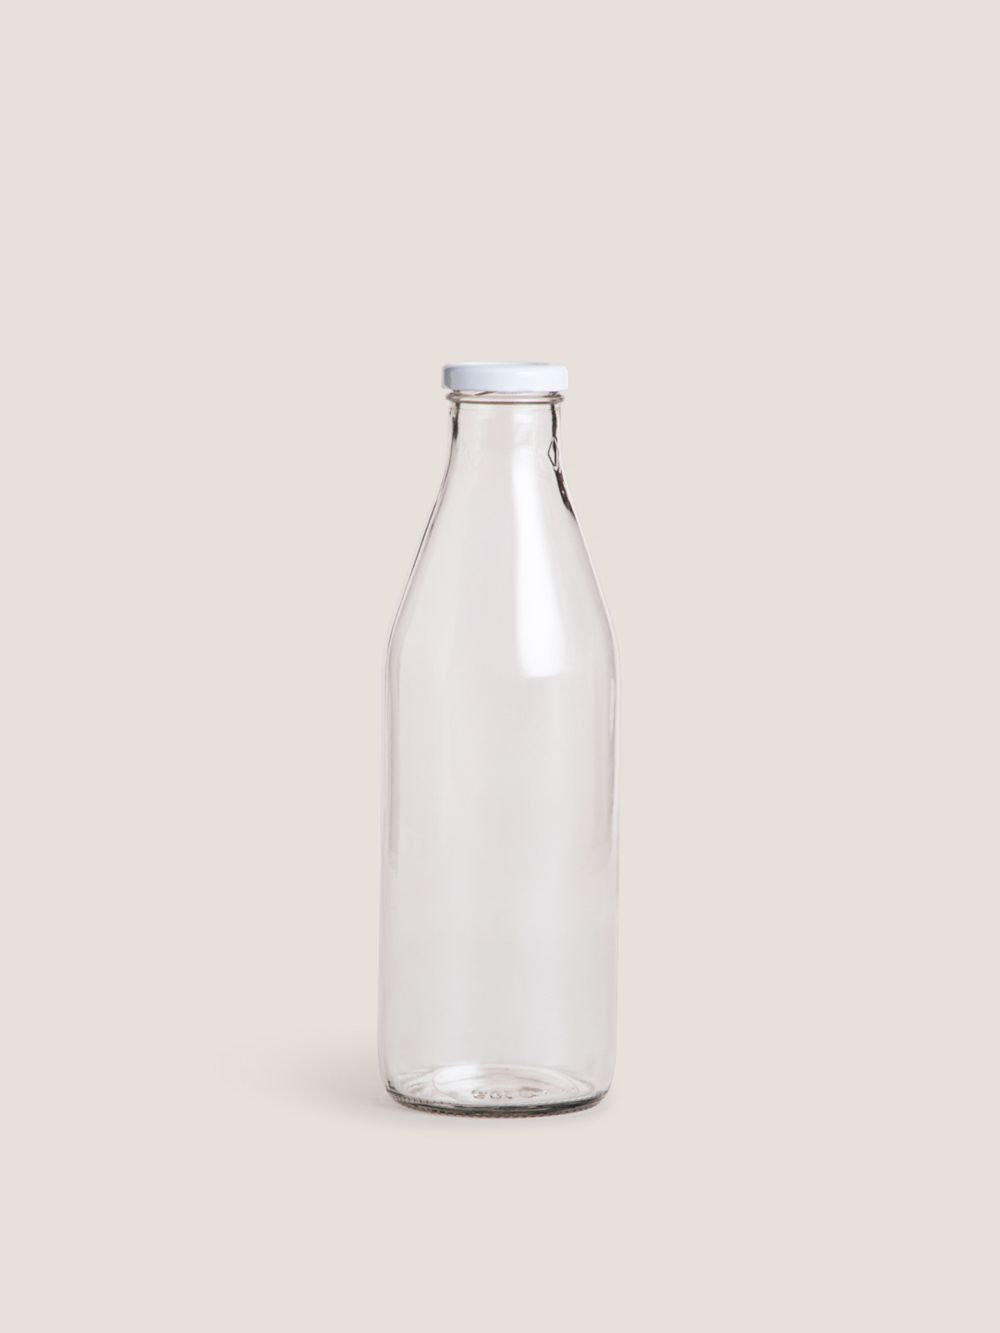 בקבוק חלב עם פקק הברגה